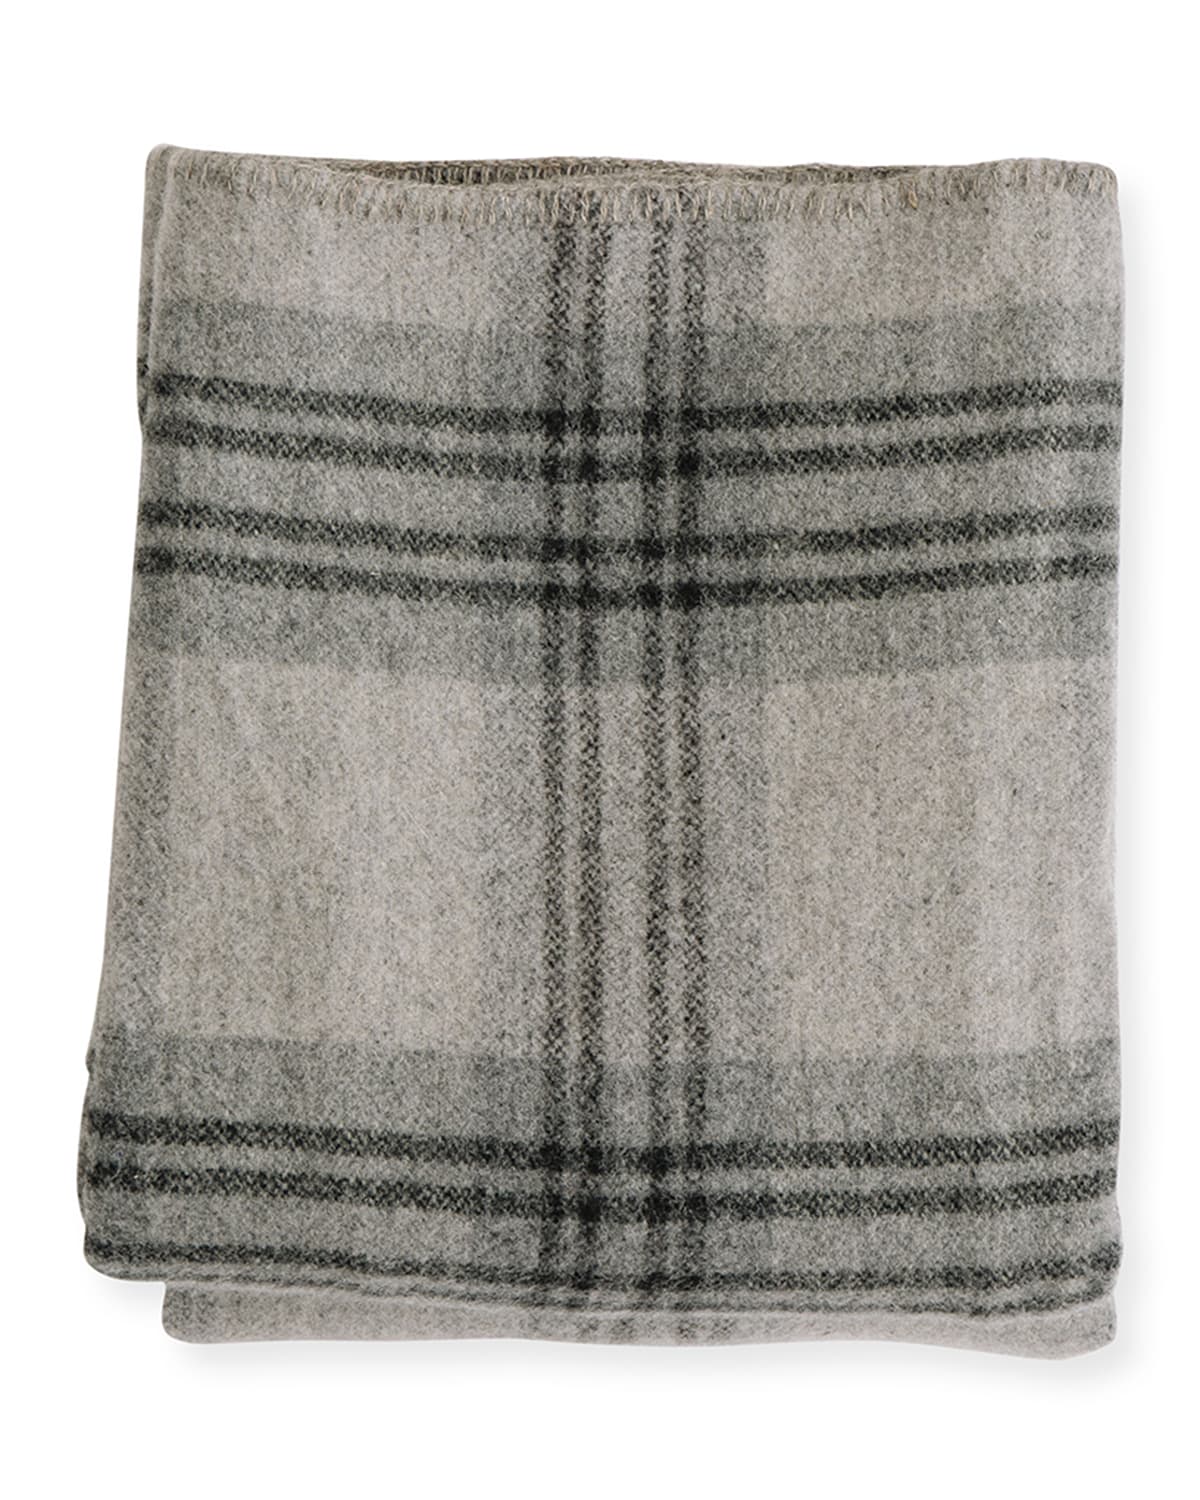 Evangeline Linens Plaid Merino Wool Blanket, Fog Ledge | Horchow